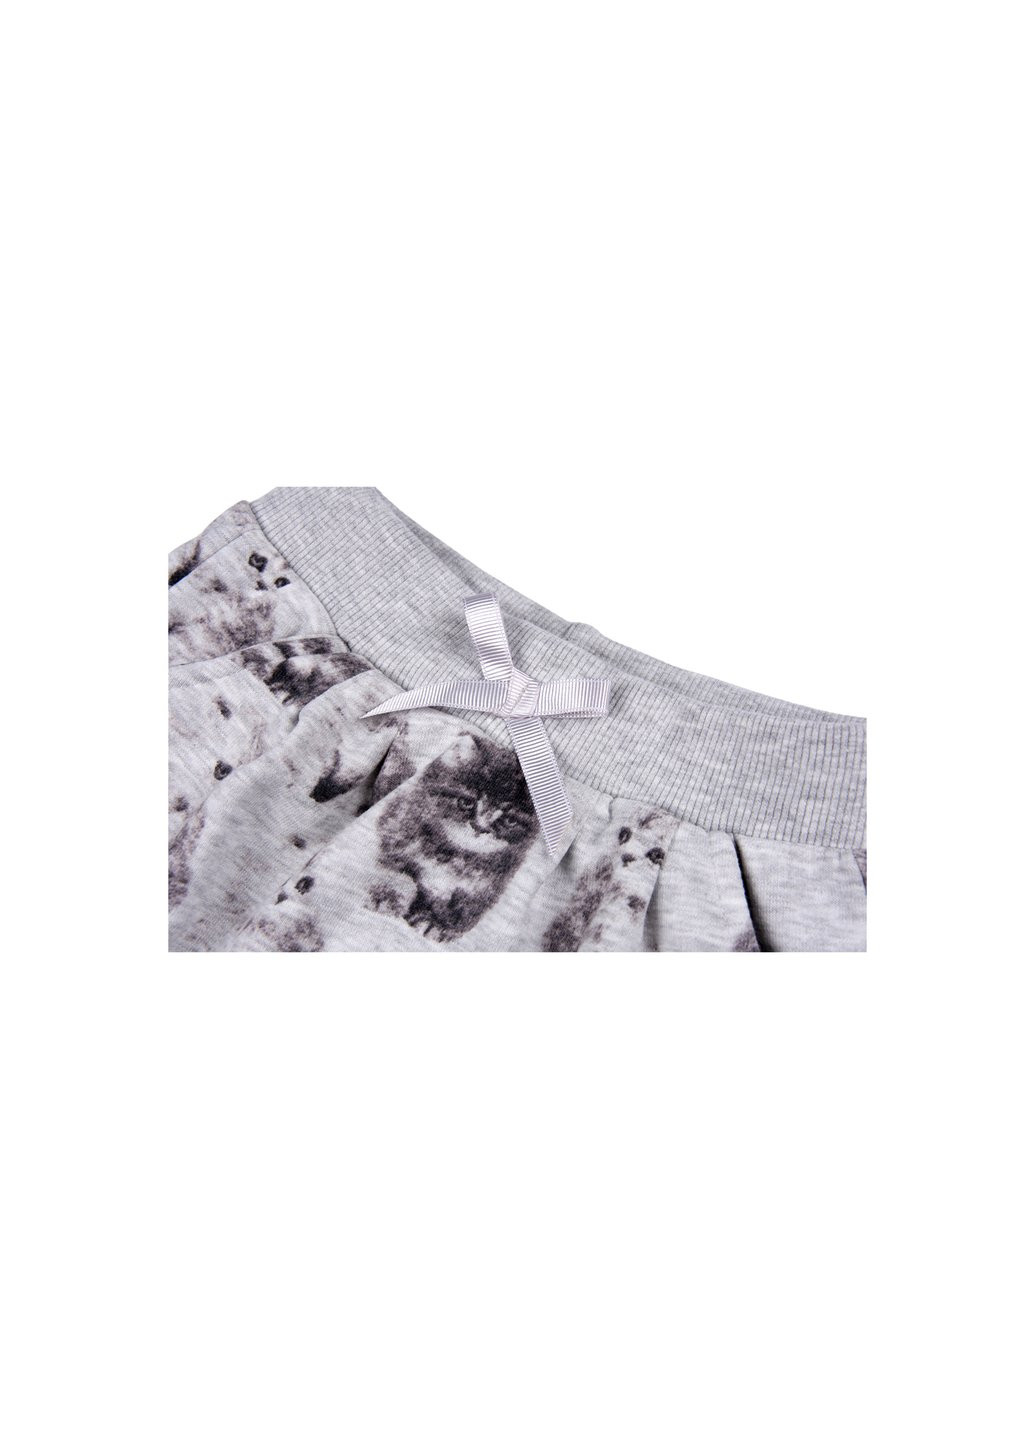 Серый демисезонный набор детской одежды кофта и брюки серый меланж (7874-92g-gray) Breeze